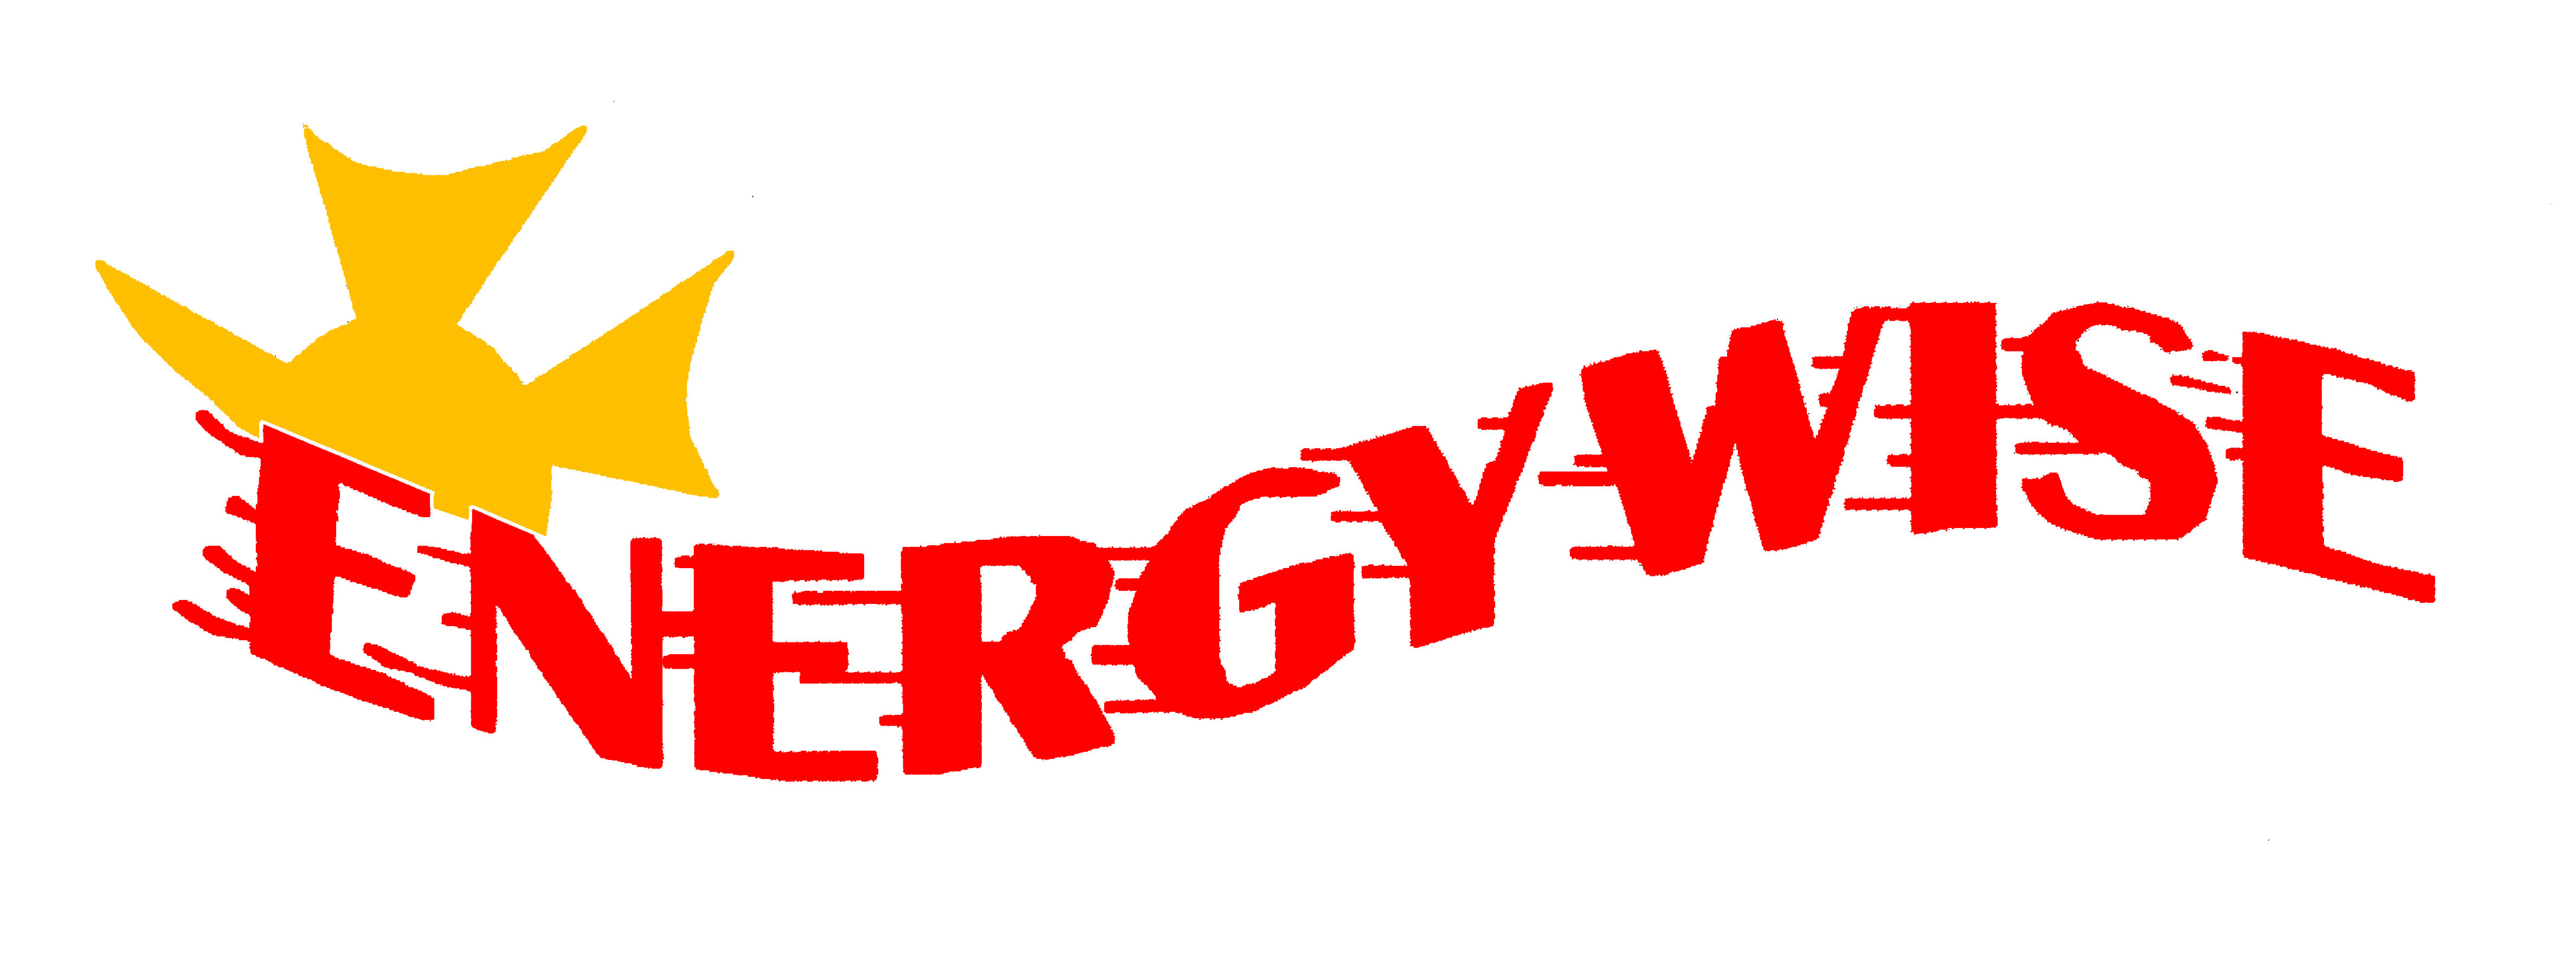 Energywise, Inc. Logo